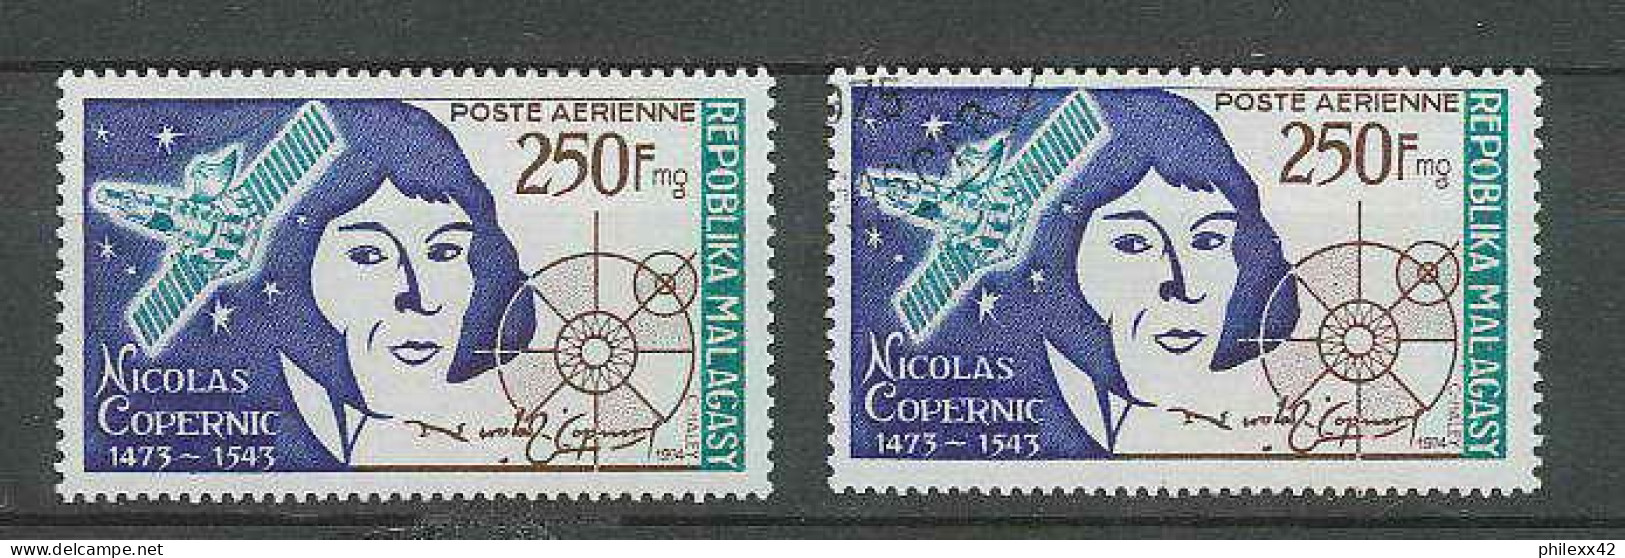 1480/ Espace (space) Neuf ** MNH Madagascar Malagasy Copernic Copernicus Kopernik 134 + USED - Afrika